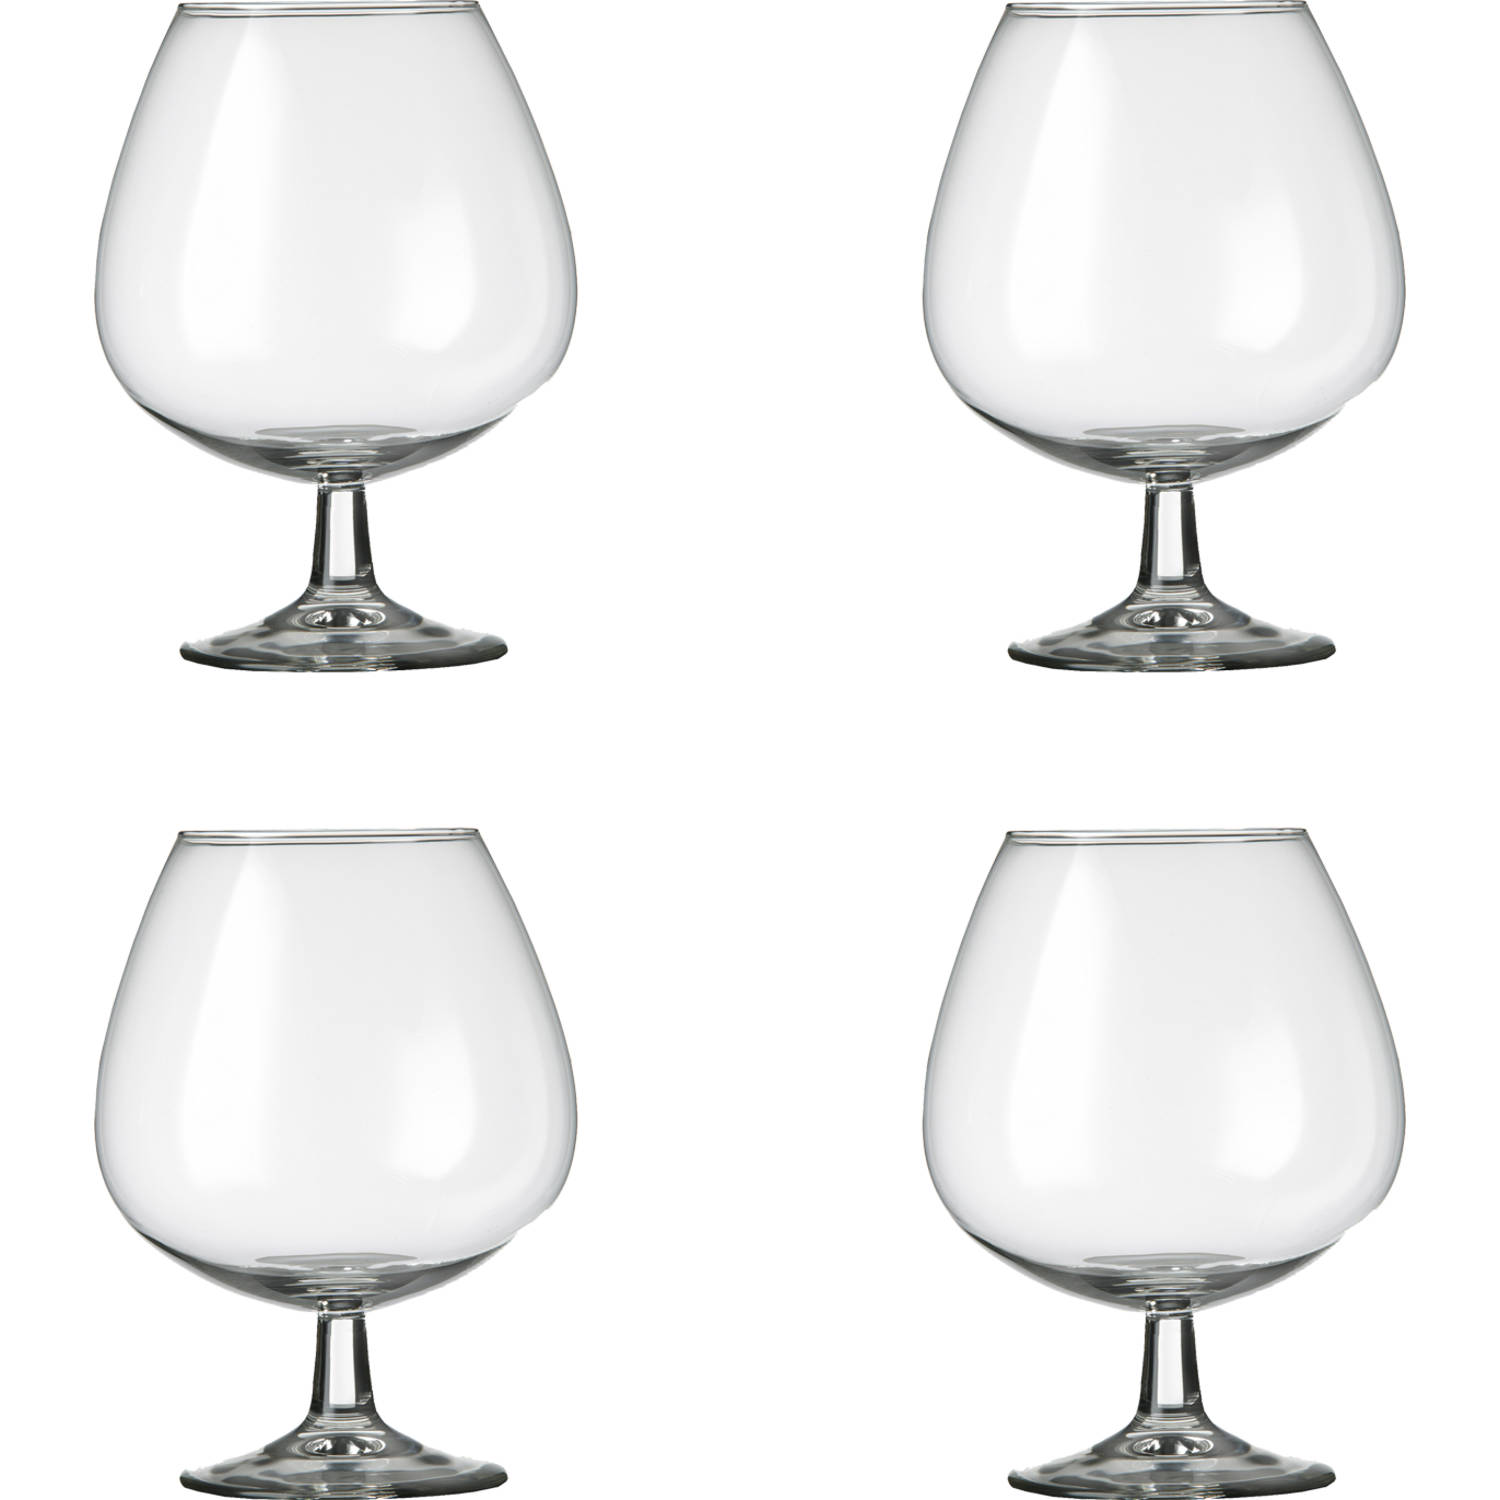 Royal Leerdam Cognacglas 613285 Specials 80 cl - Transparant 4 stuk(s)